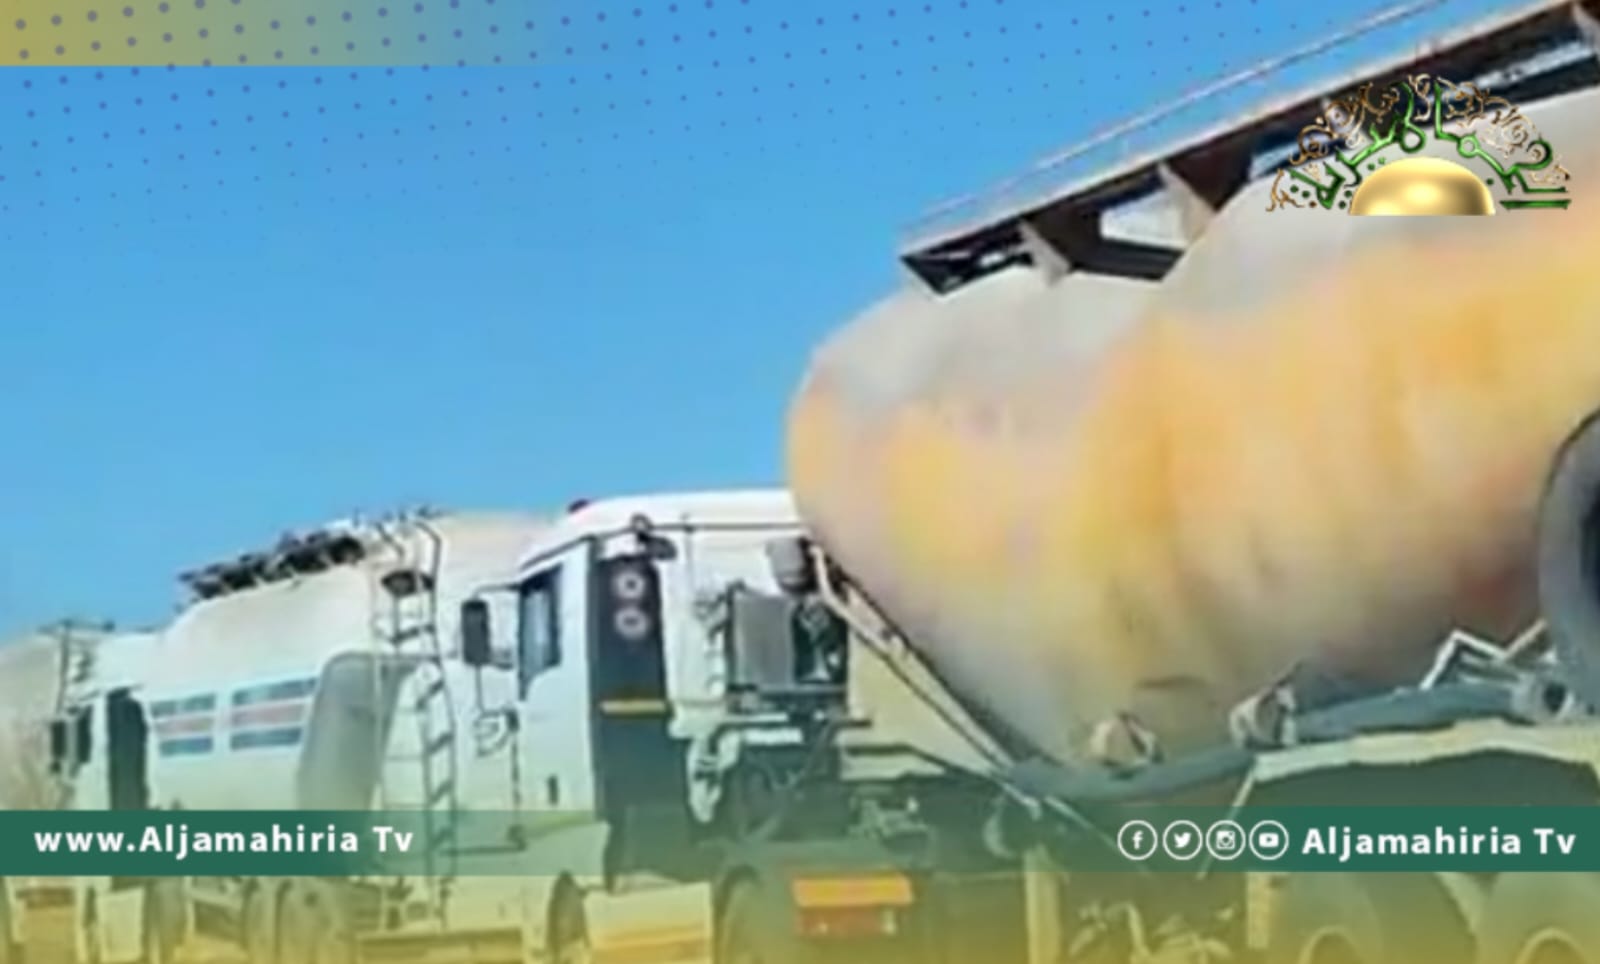 فيديو يكشف اصطفاف شاحنات ليبية بالسعي لدخول ليبيا